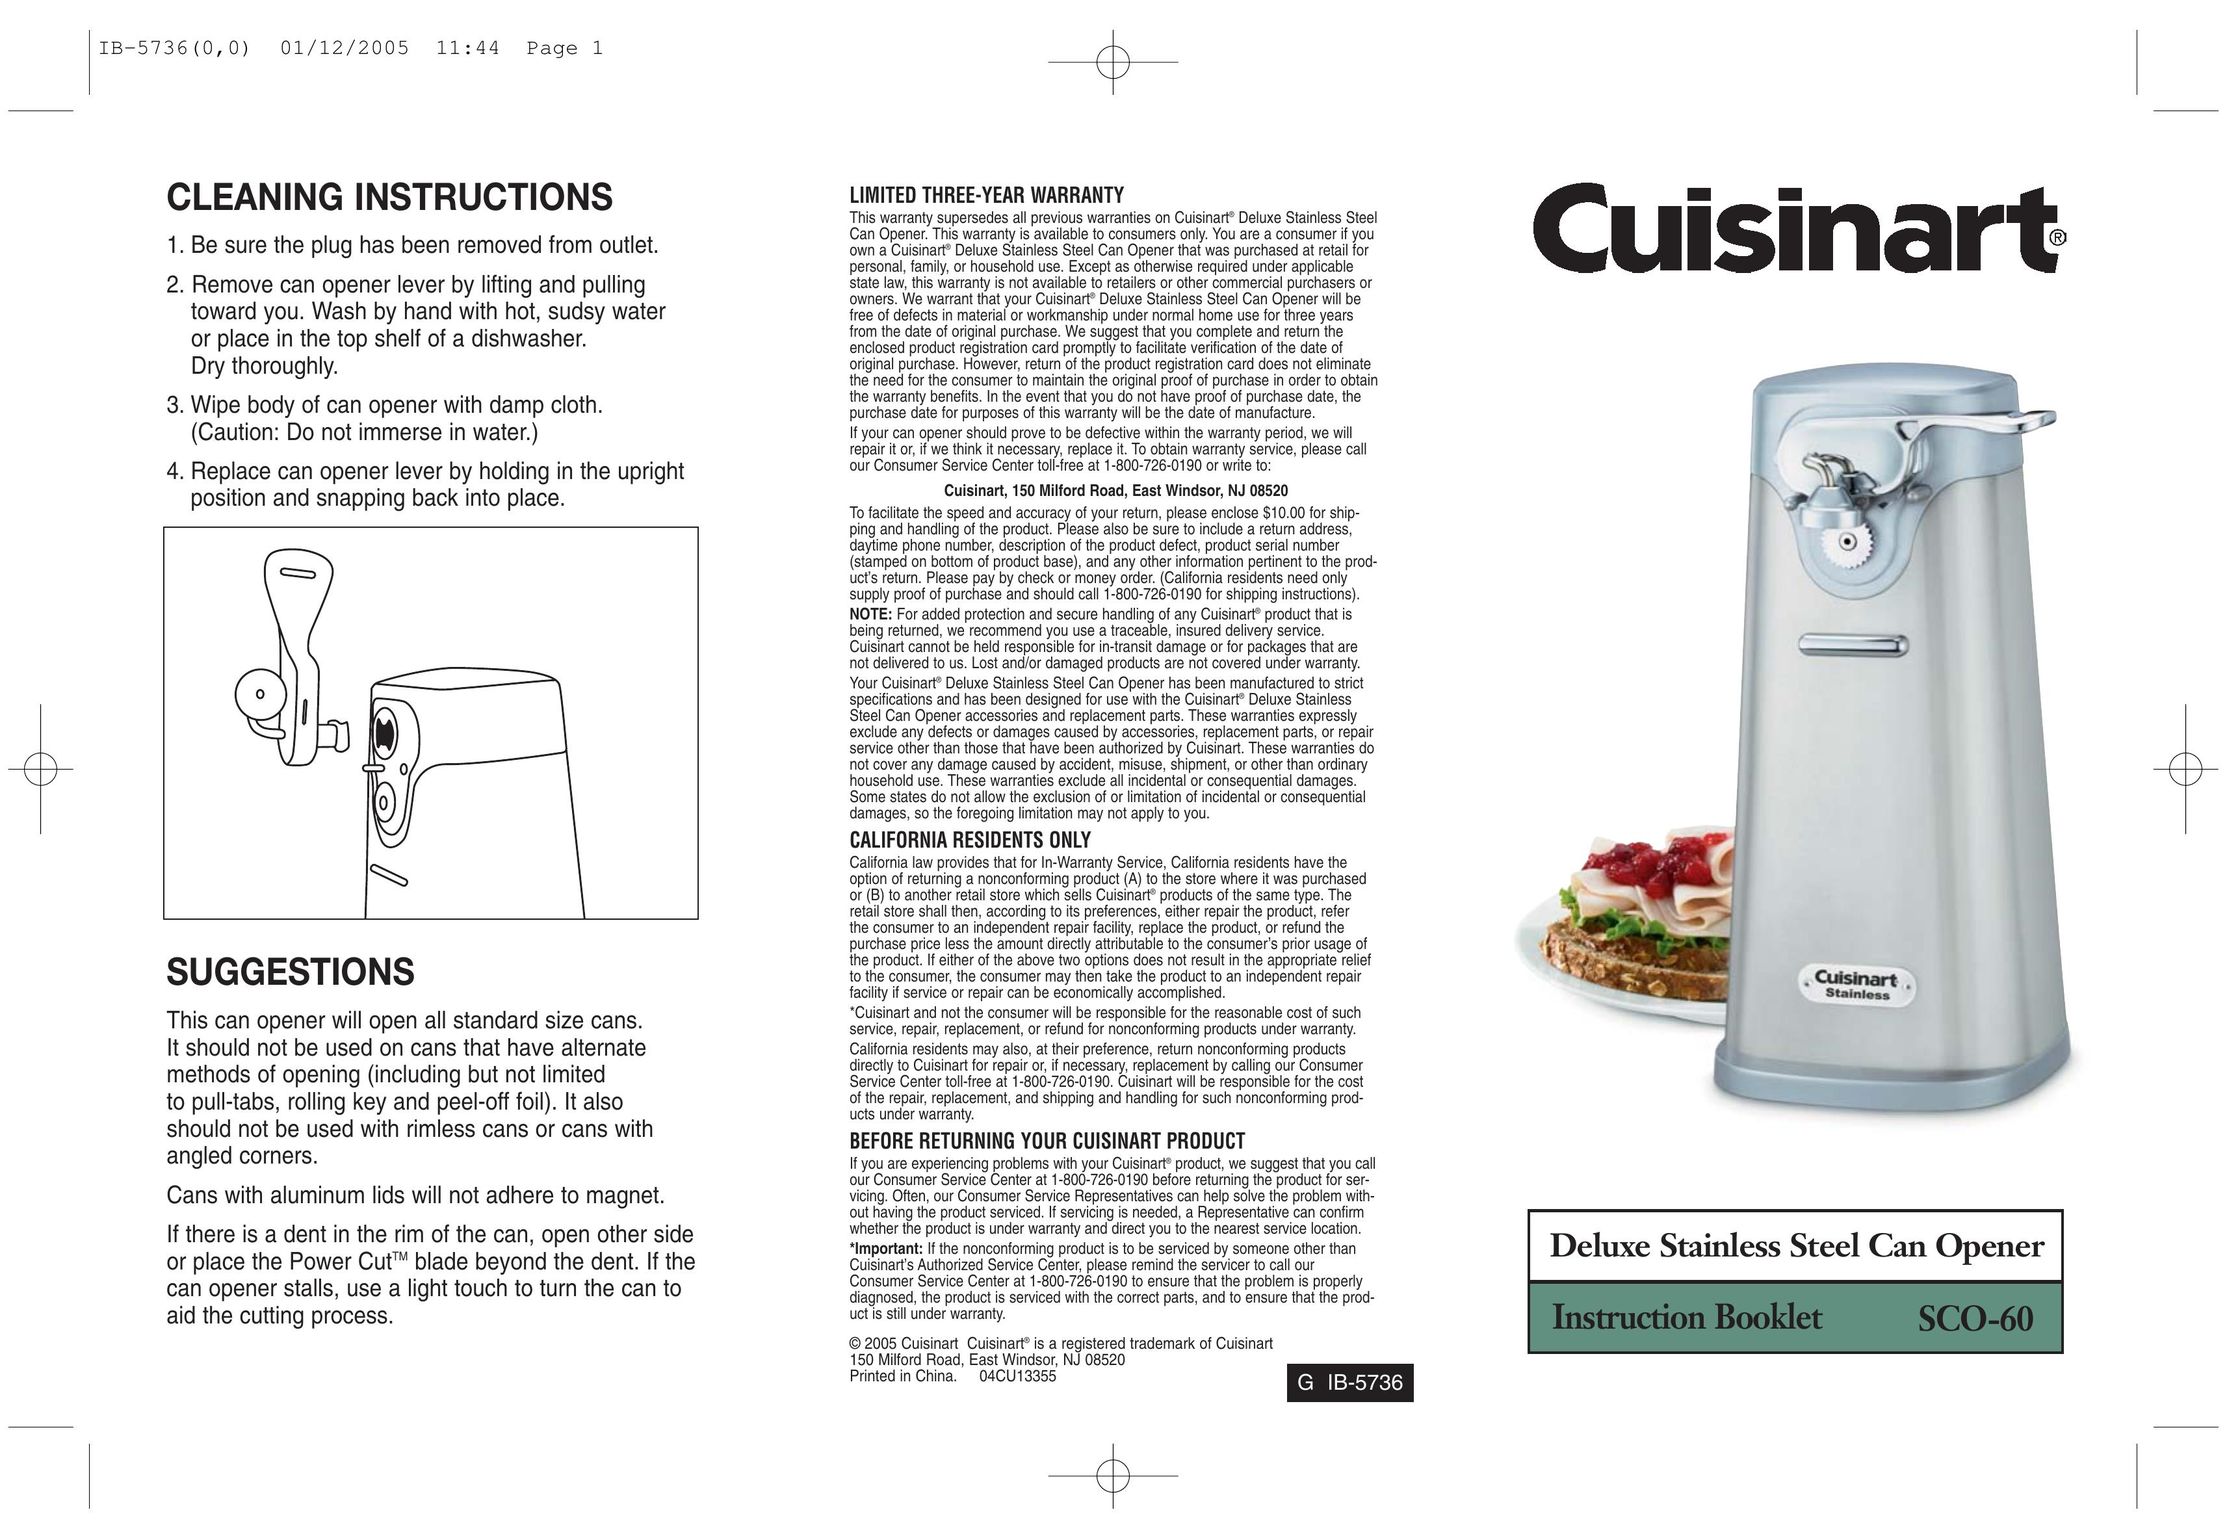 Cuisinart IB-5736 Can Opener User Manual